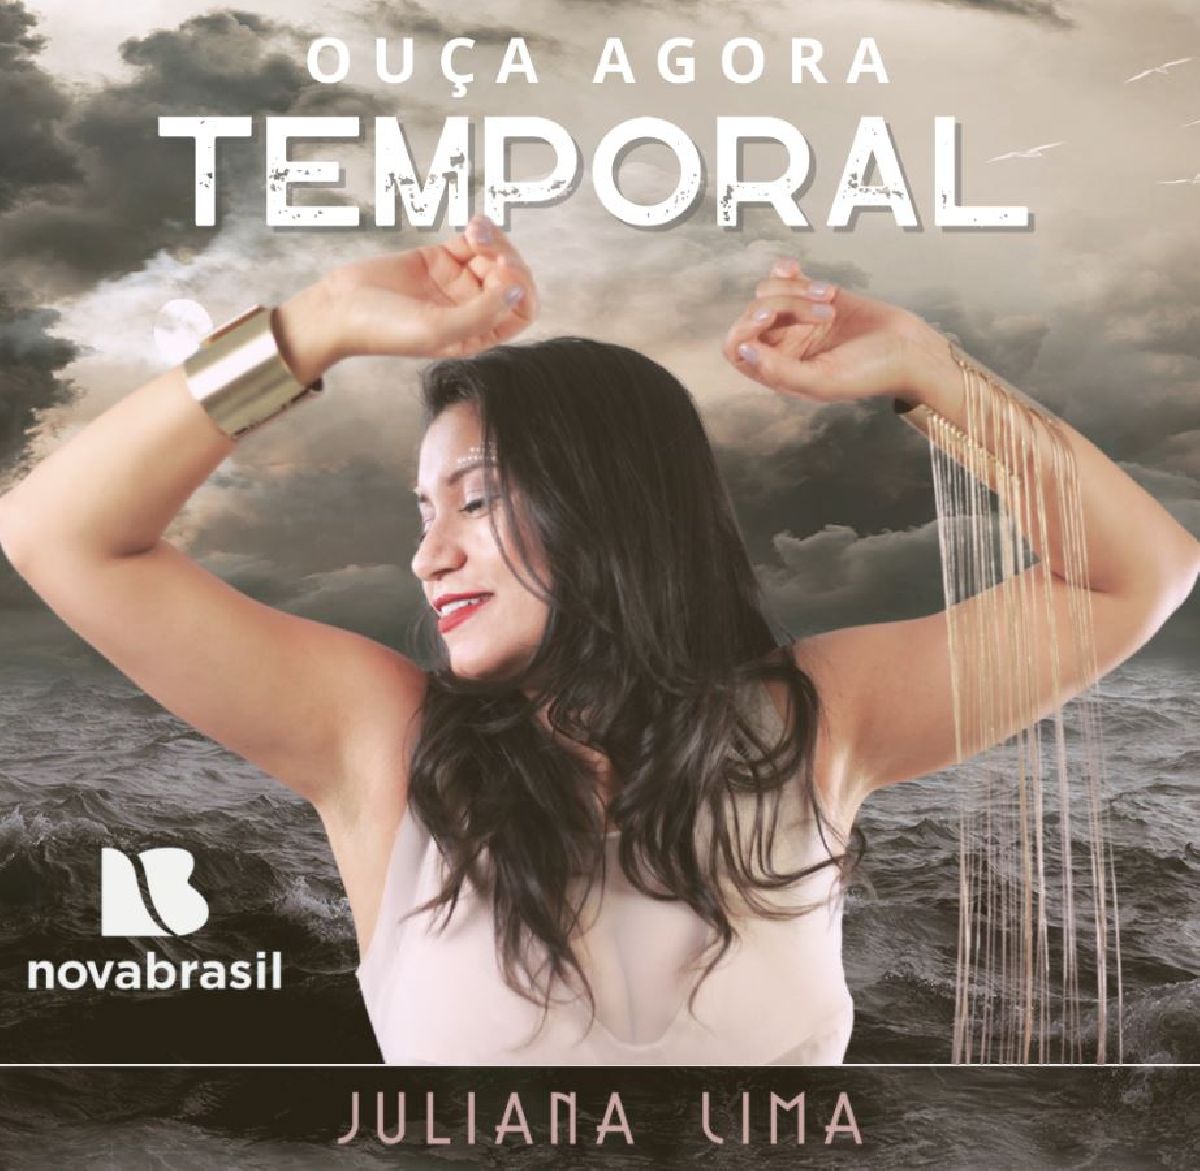 Juliana Lima estreia a música 